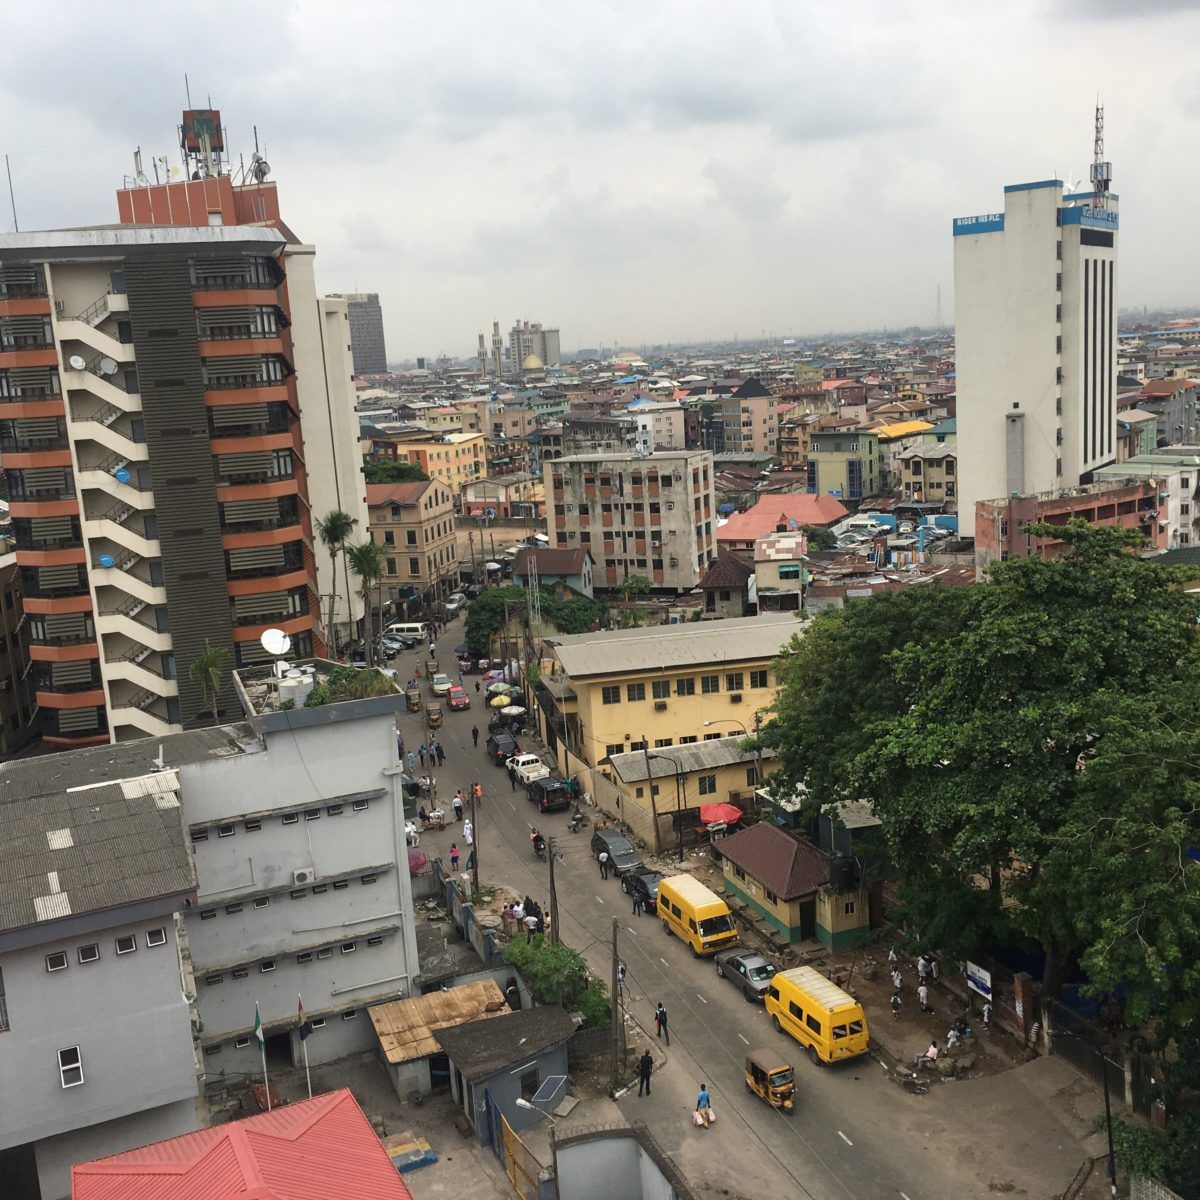 City of Lagos, Nigeria. Image by Wome Uyeye. Nigeria, 2018.